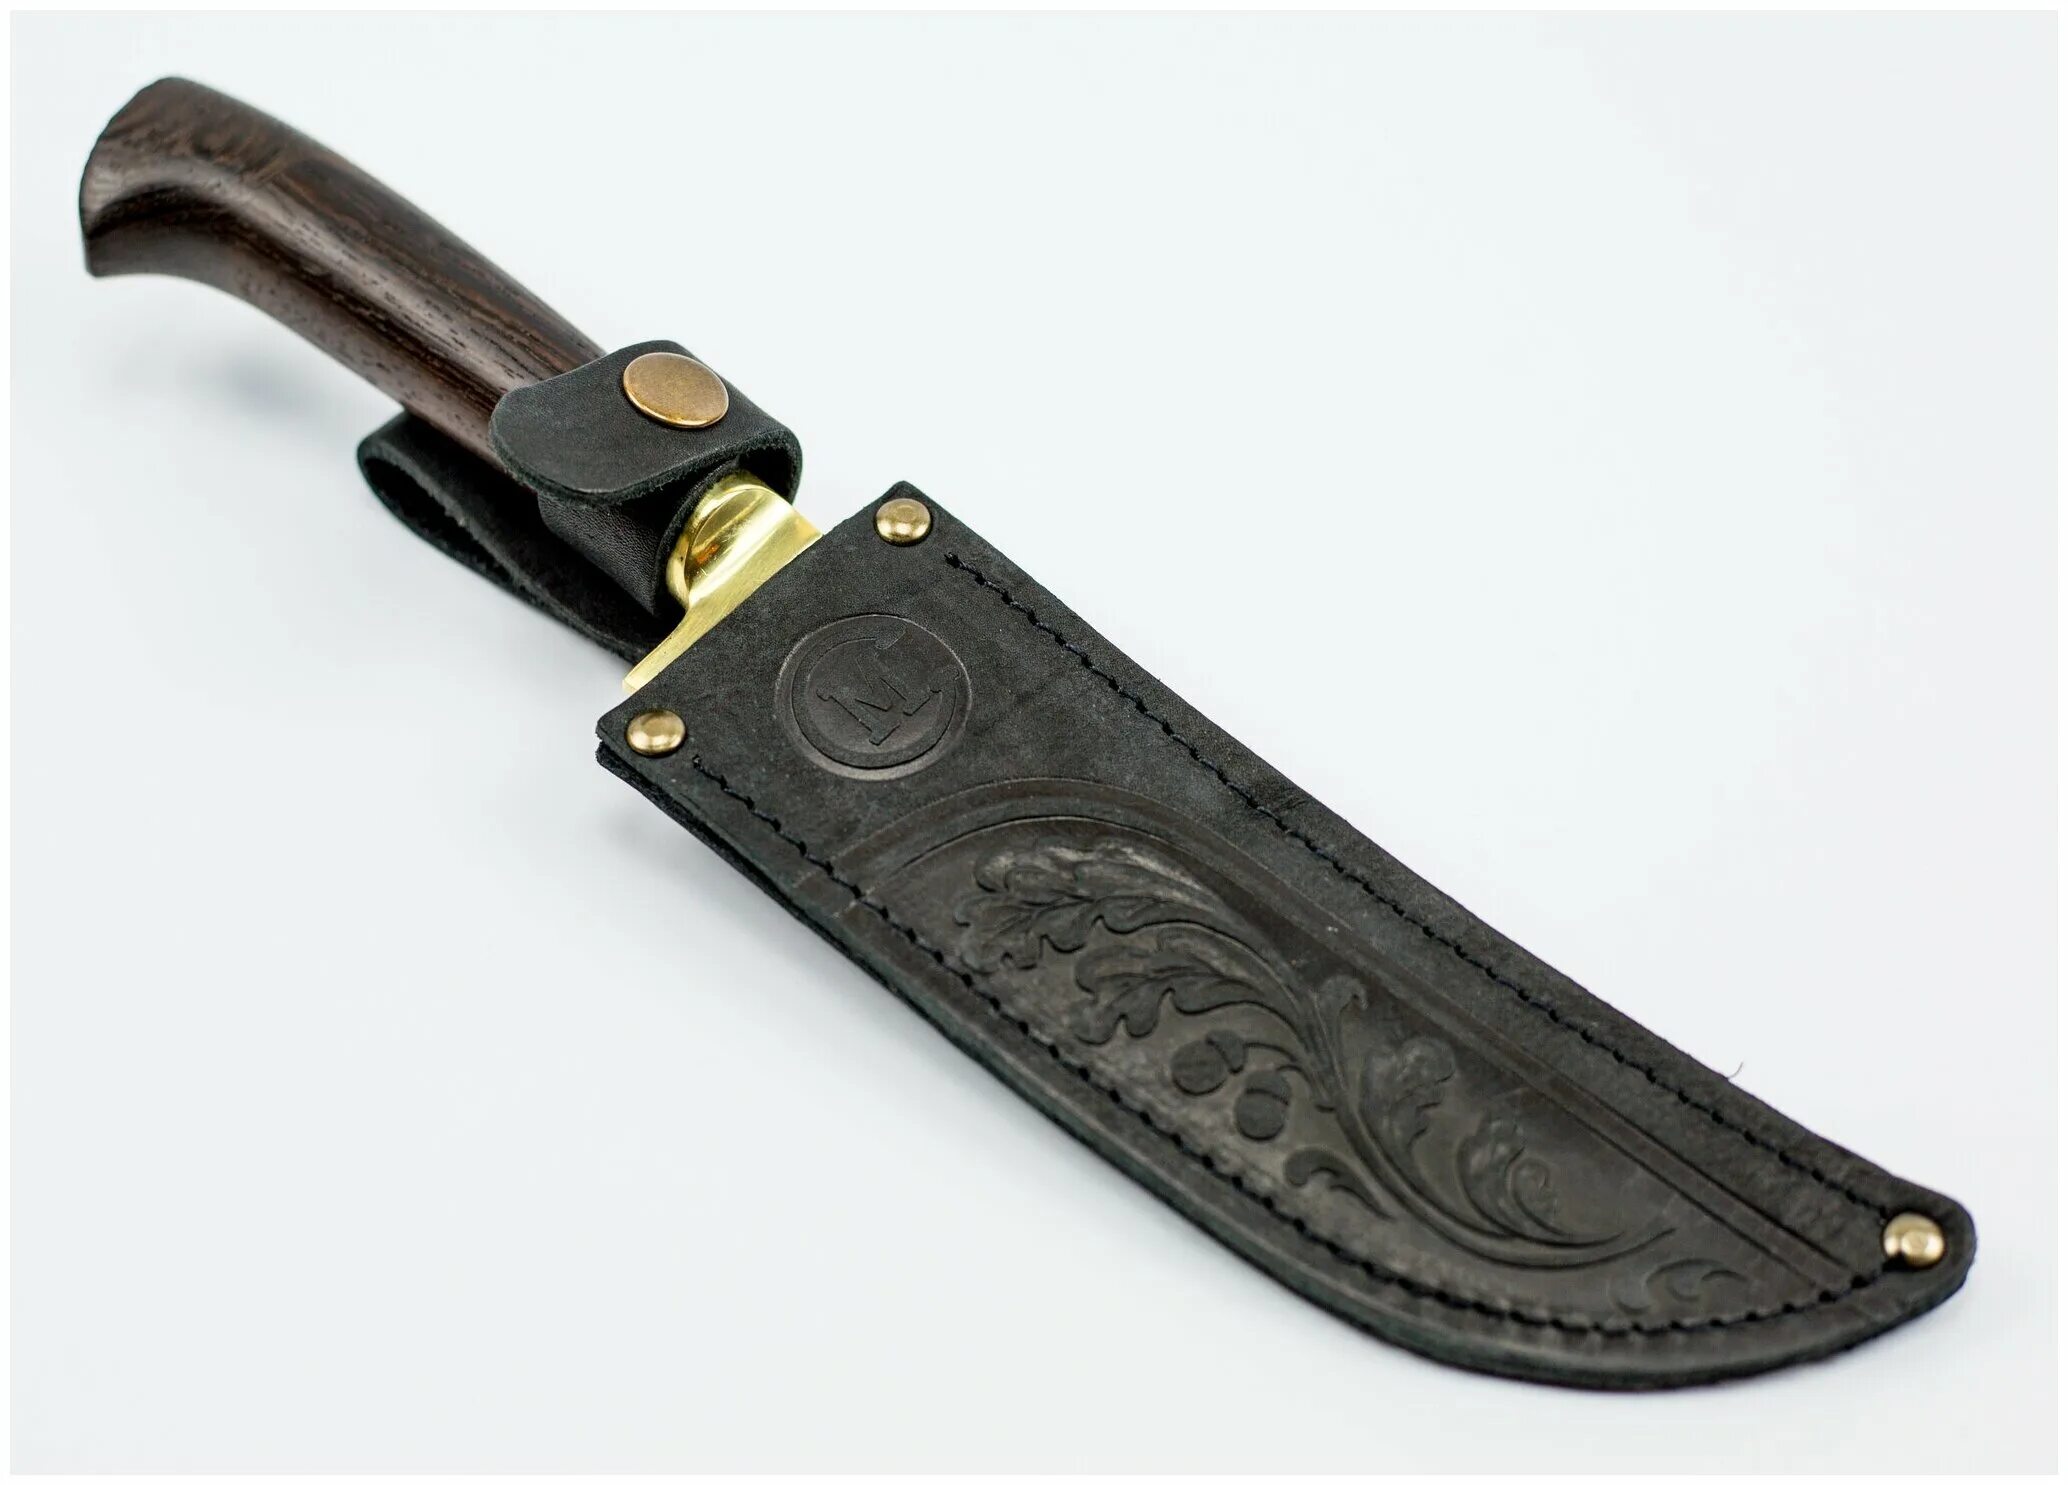 Купить нож отзывы. Нож пчак узбекский х12мф. Пчак (узбекский нож) - 1716. Нож узбекский (сталь х12мф). Пчак Семина.